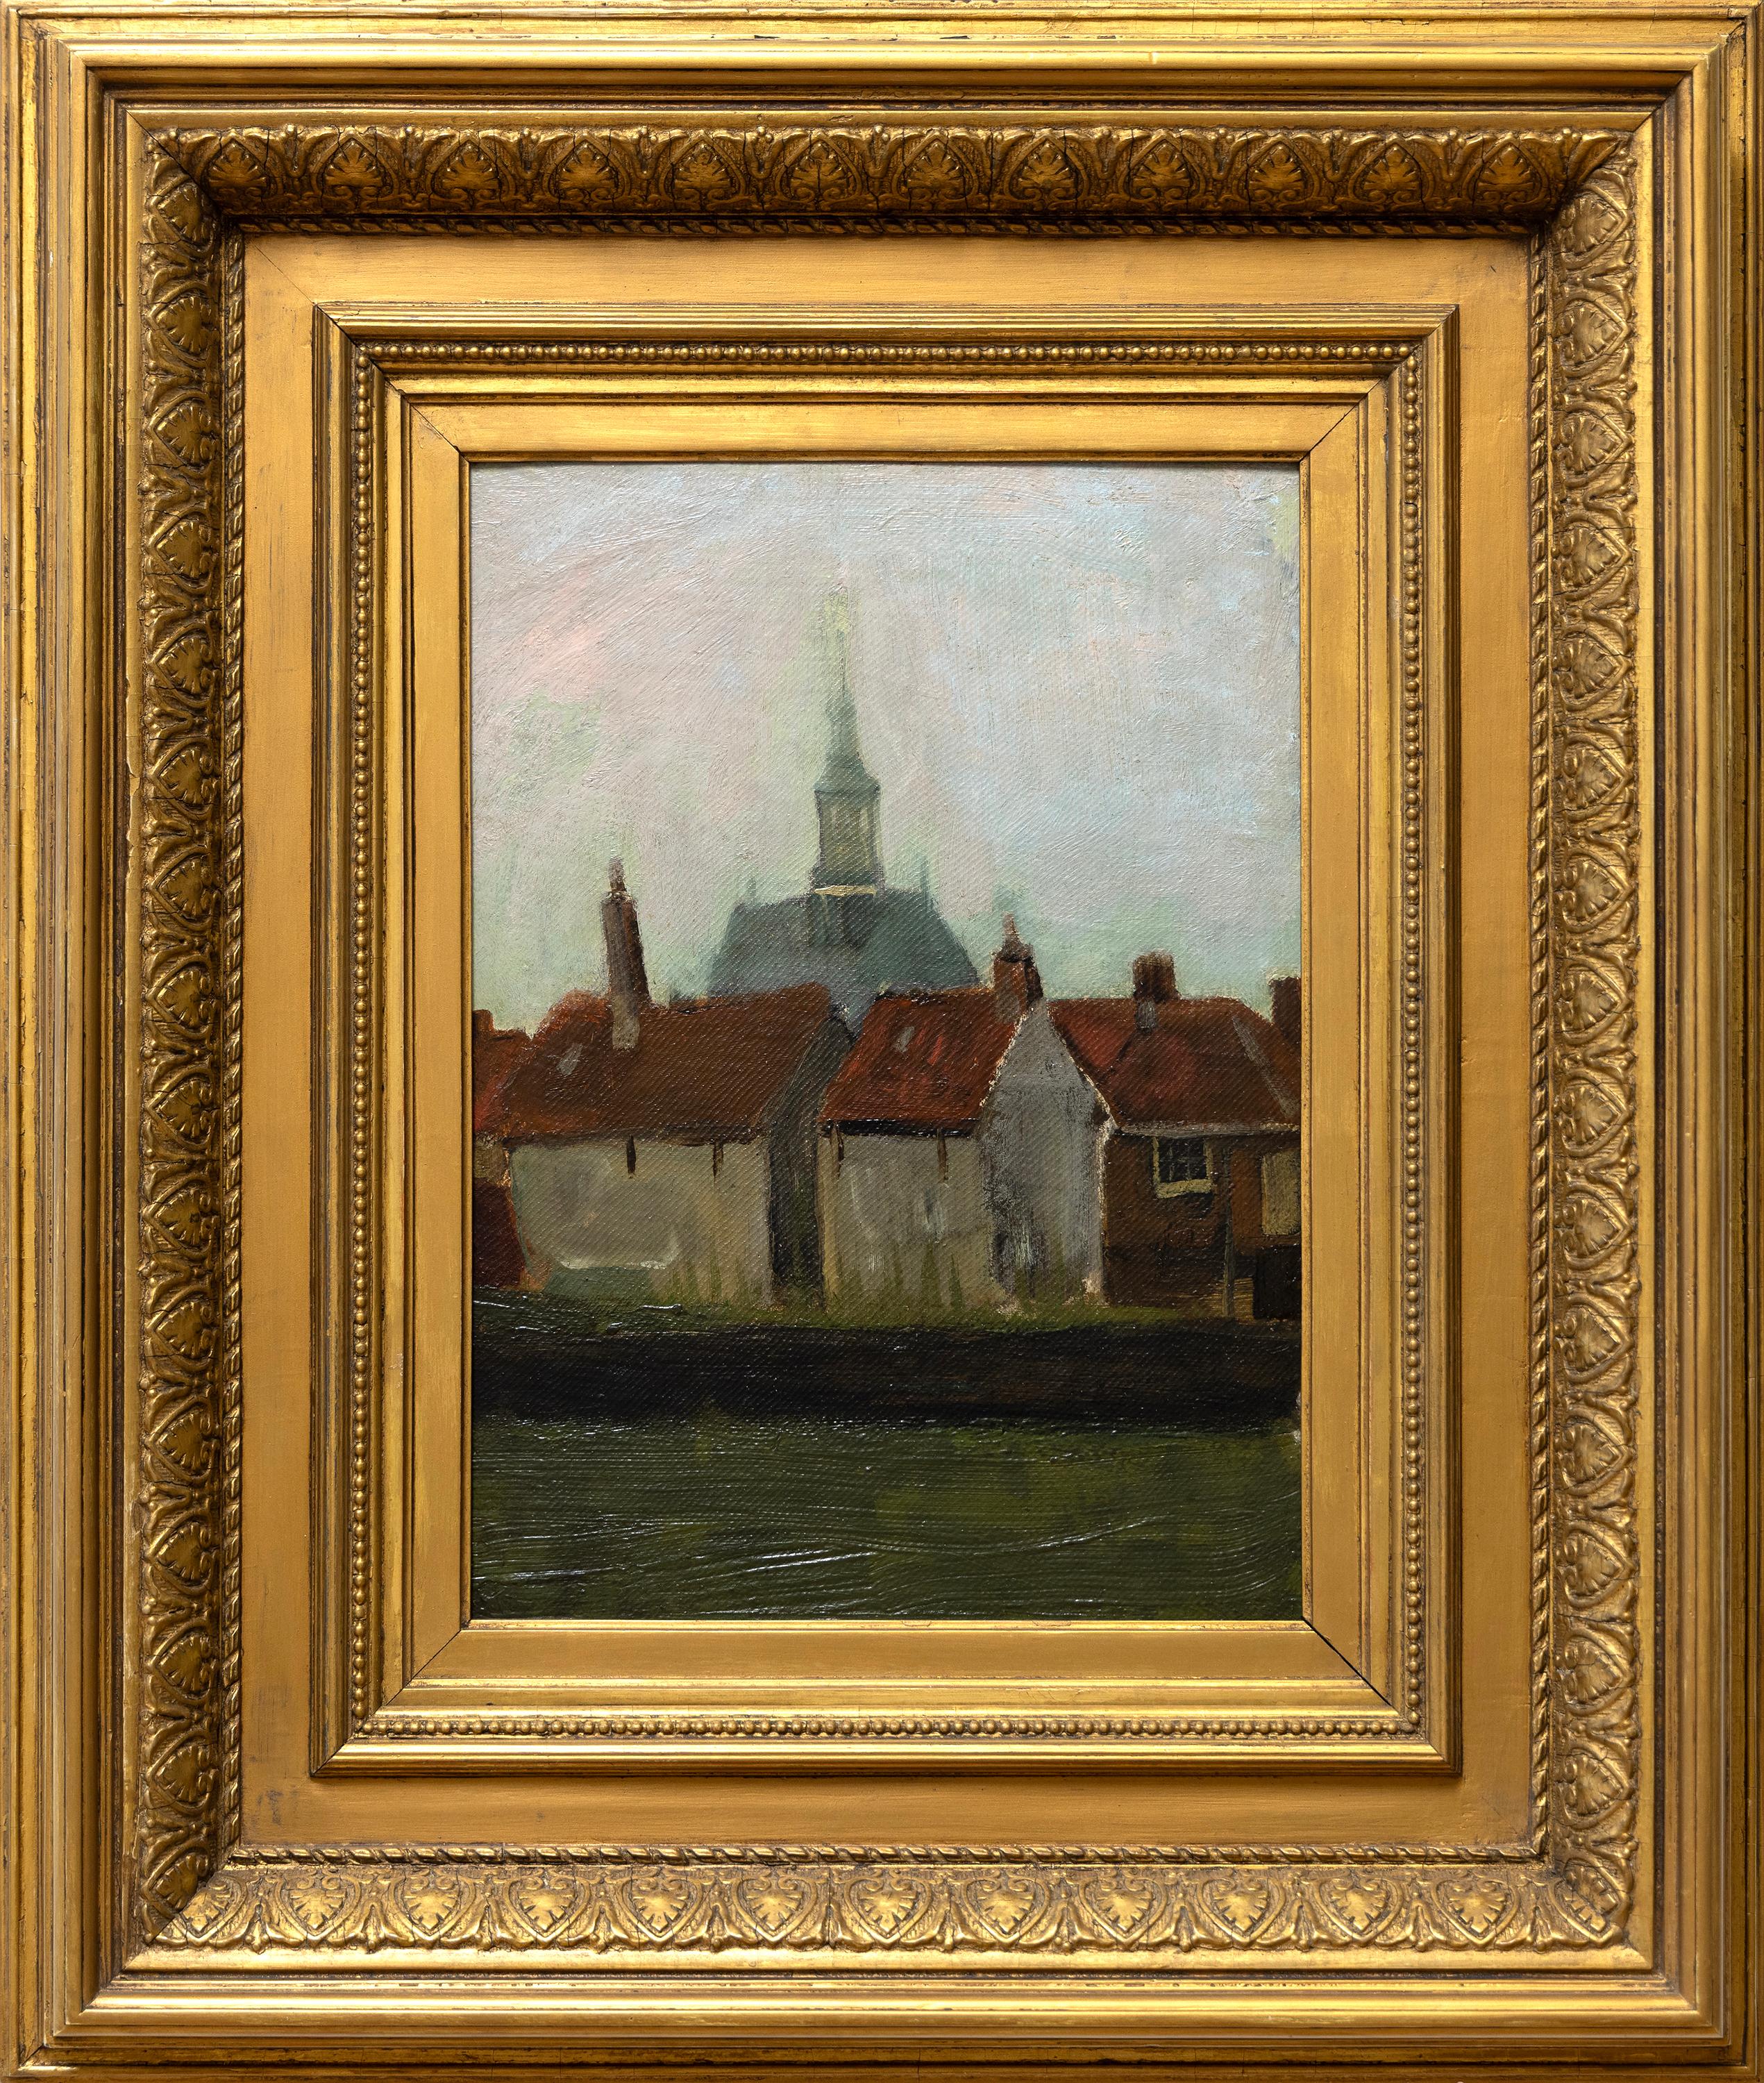 Die neue Kirche und alte Häuser in Den Haag – Painting von Vincent van Gogh